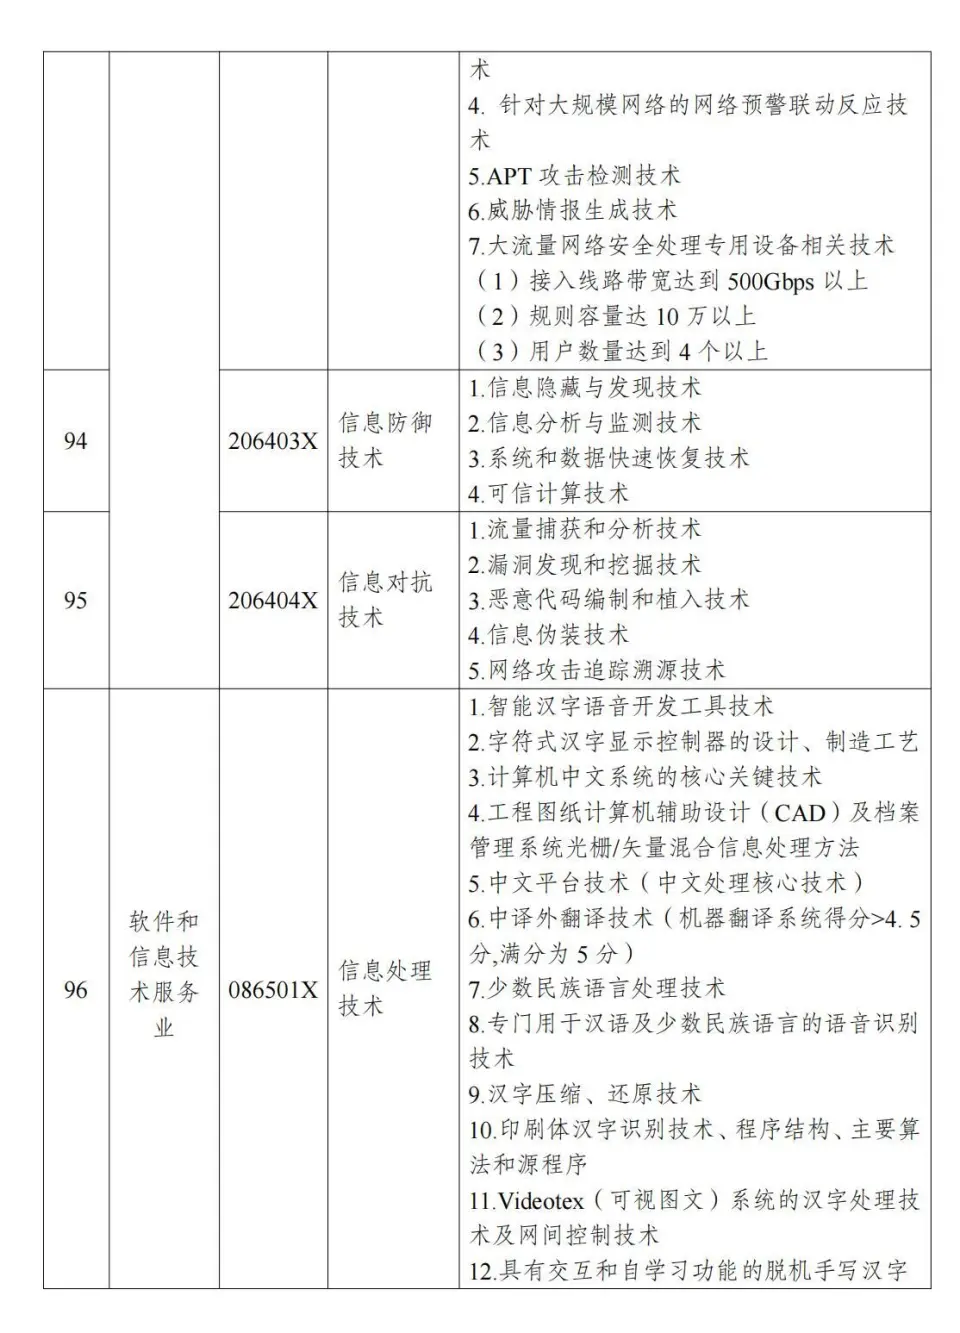 两部分公布《中国制止出口限制出口技术目录》 第22张图片